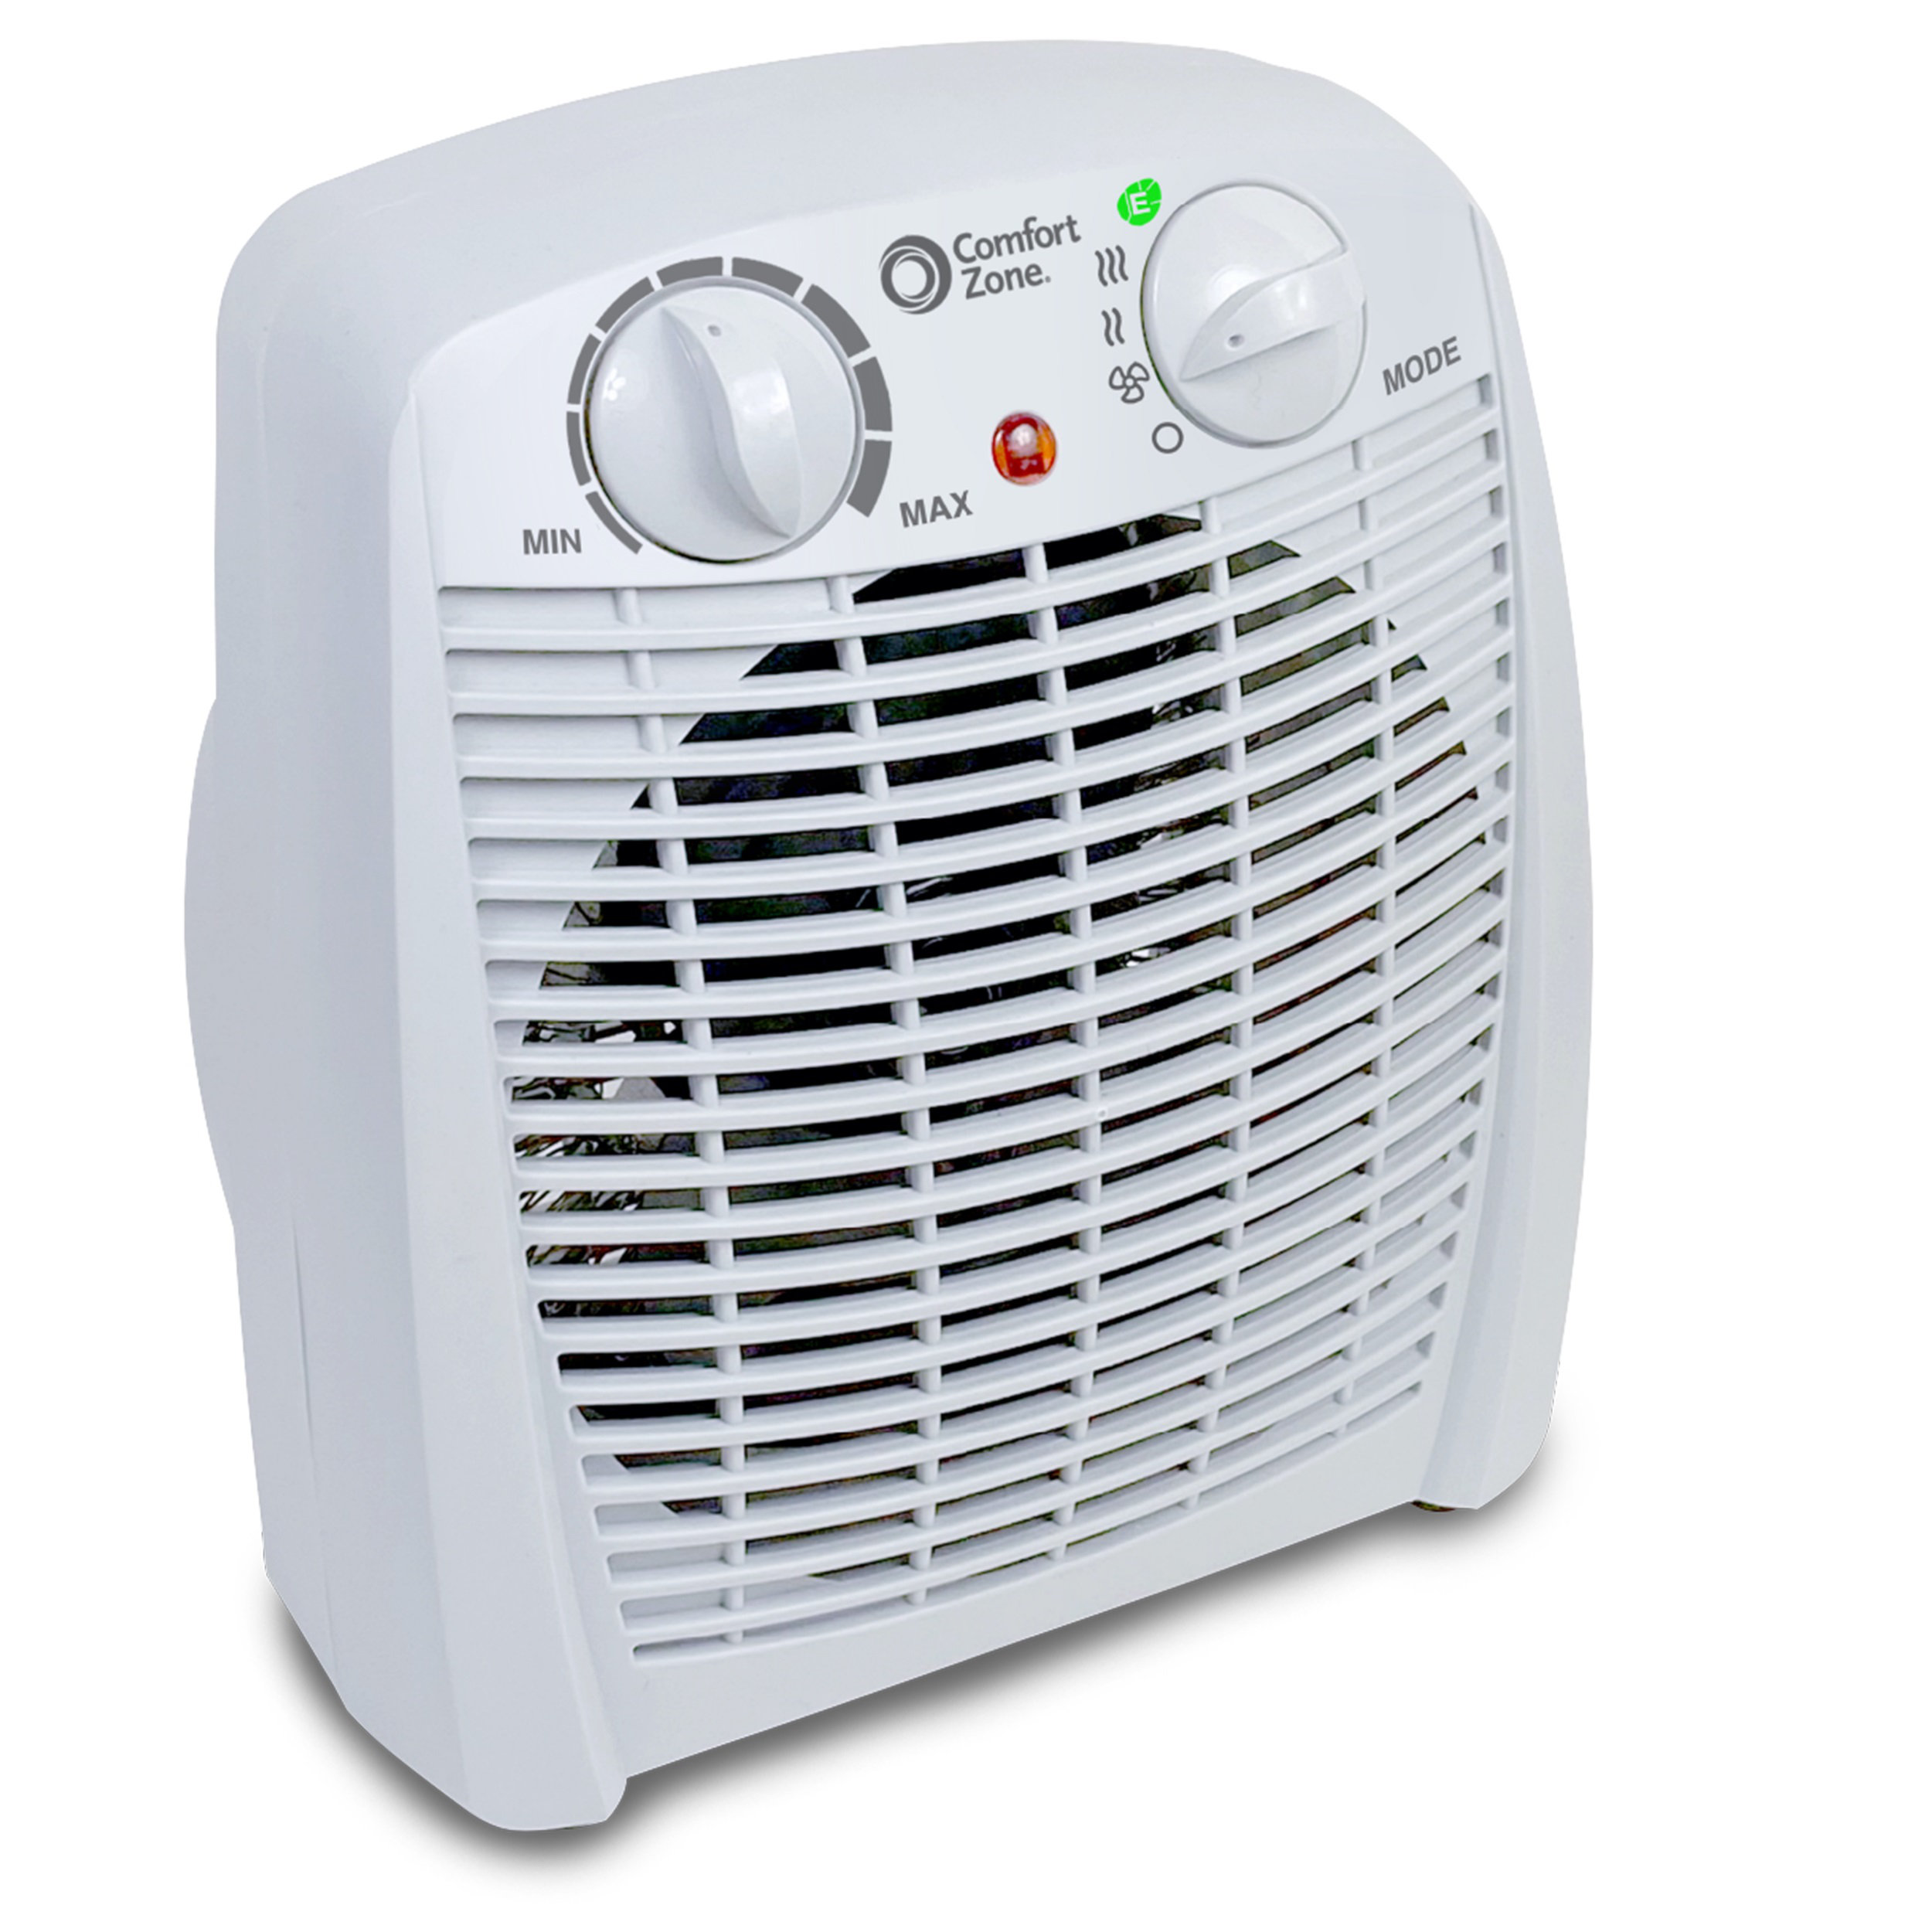 energy-save-1500-watt-electric-fan-compact-heater.jpg